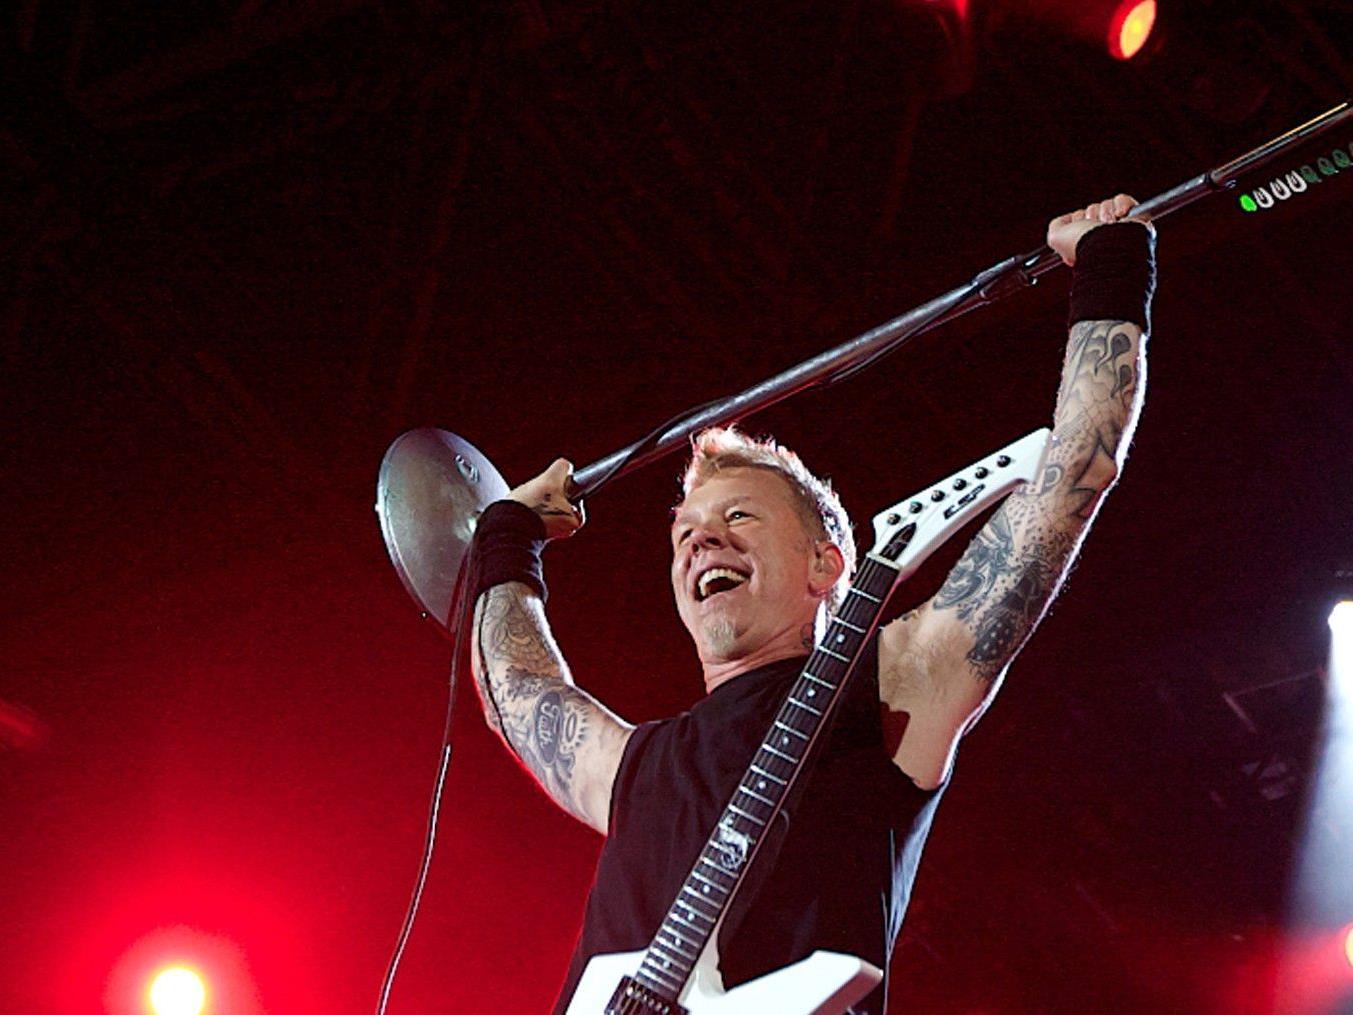 Wir berichten live vom Nova Rock 2012: Metallica rocken das Festival am Sonntag.